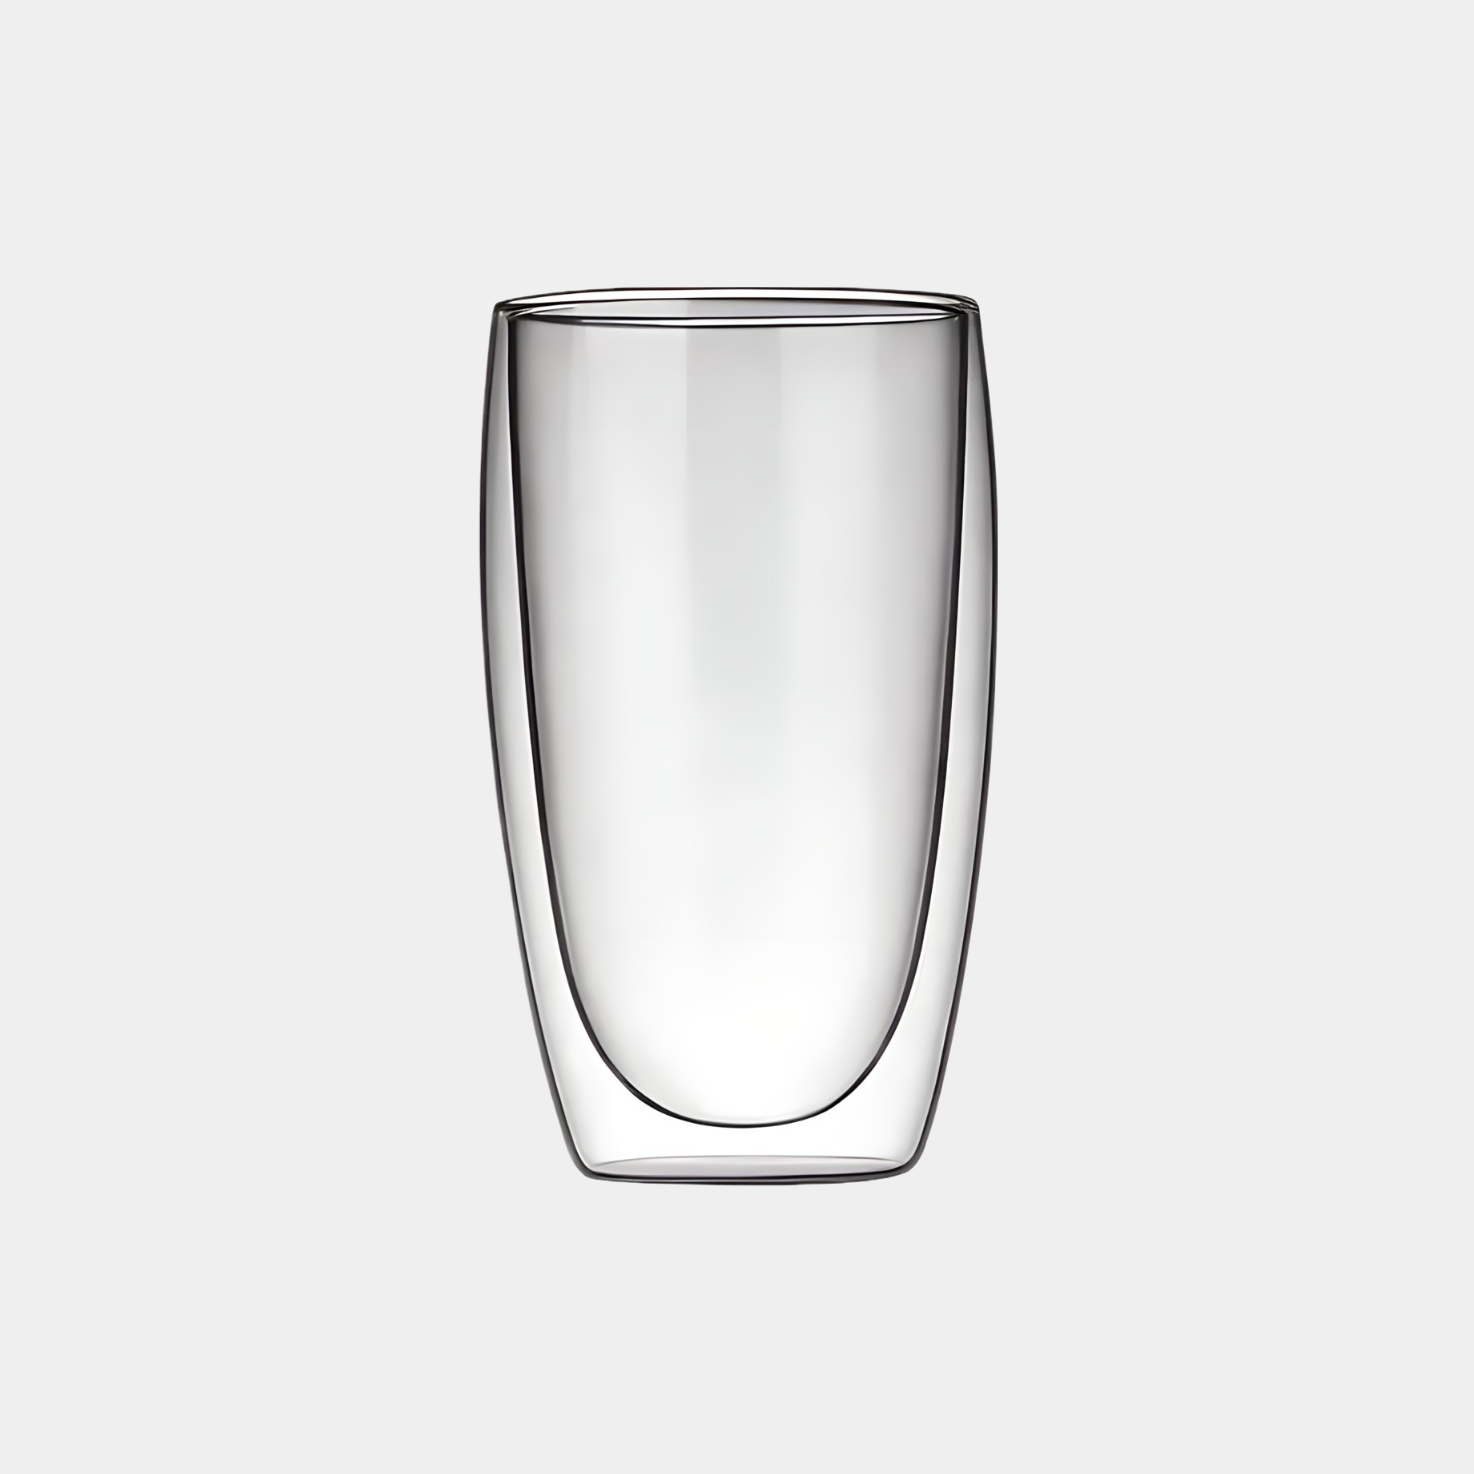 Auf diesem Bild sieht man unser Double Wall Glas 350ml. Das Glas hält Getränke länger Kalt oder Warm und ist optisch ein Hingucker. Es ist elegant und ästhetisch.